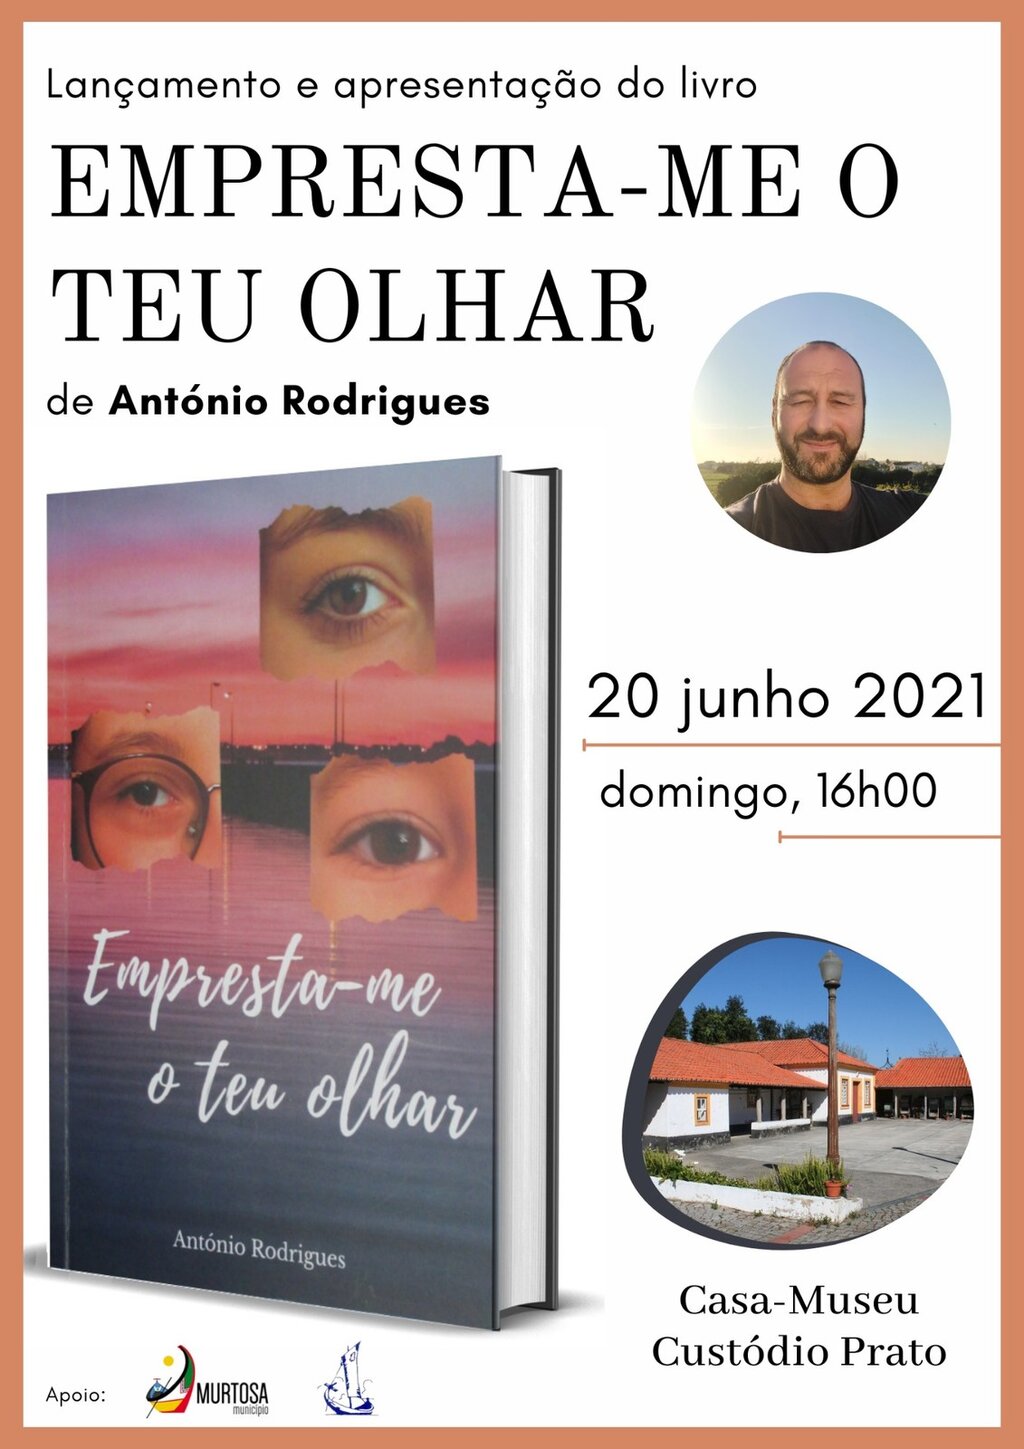 Lançamento do Livro "Empresta-me o teu olhar", de António Rodrigues